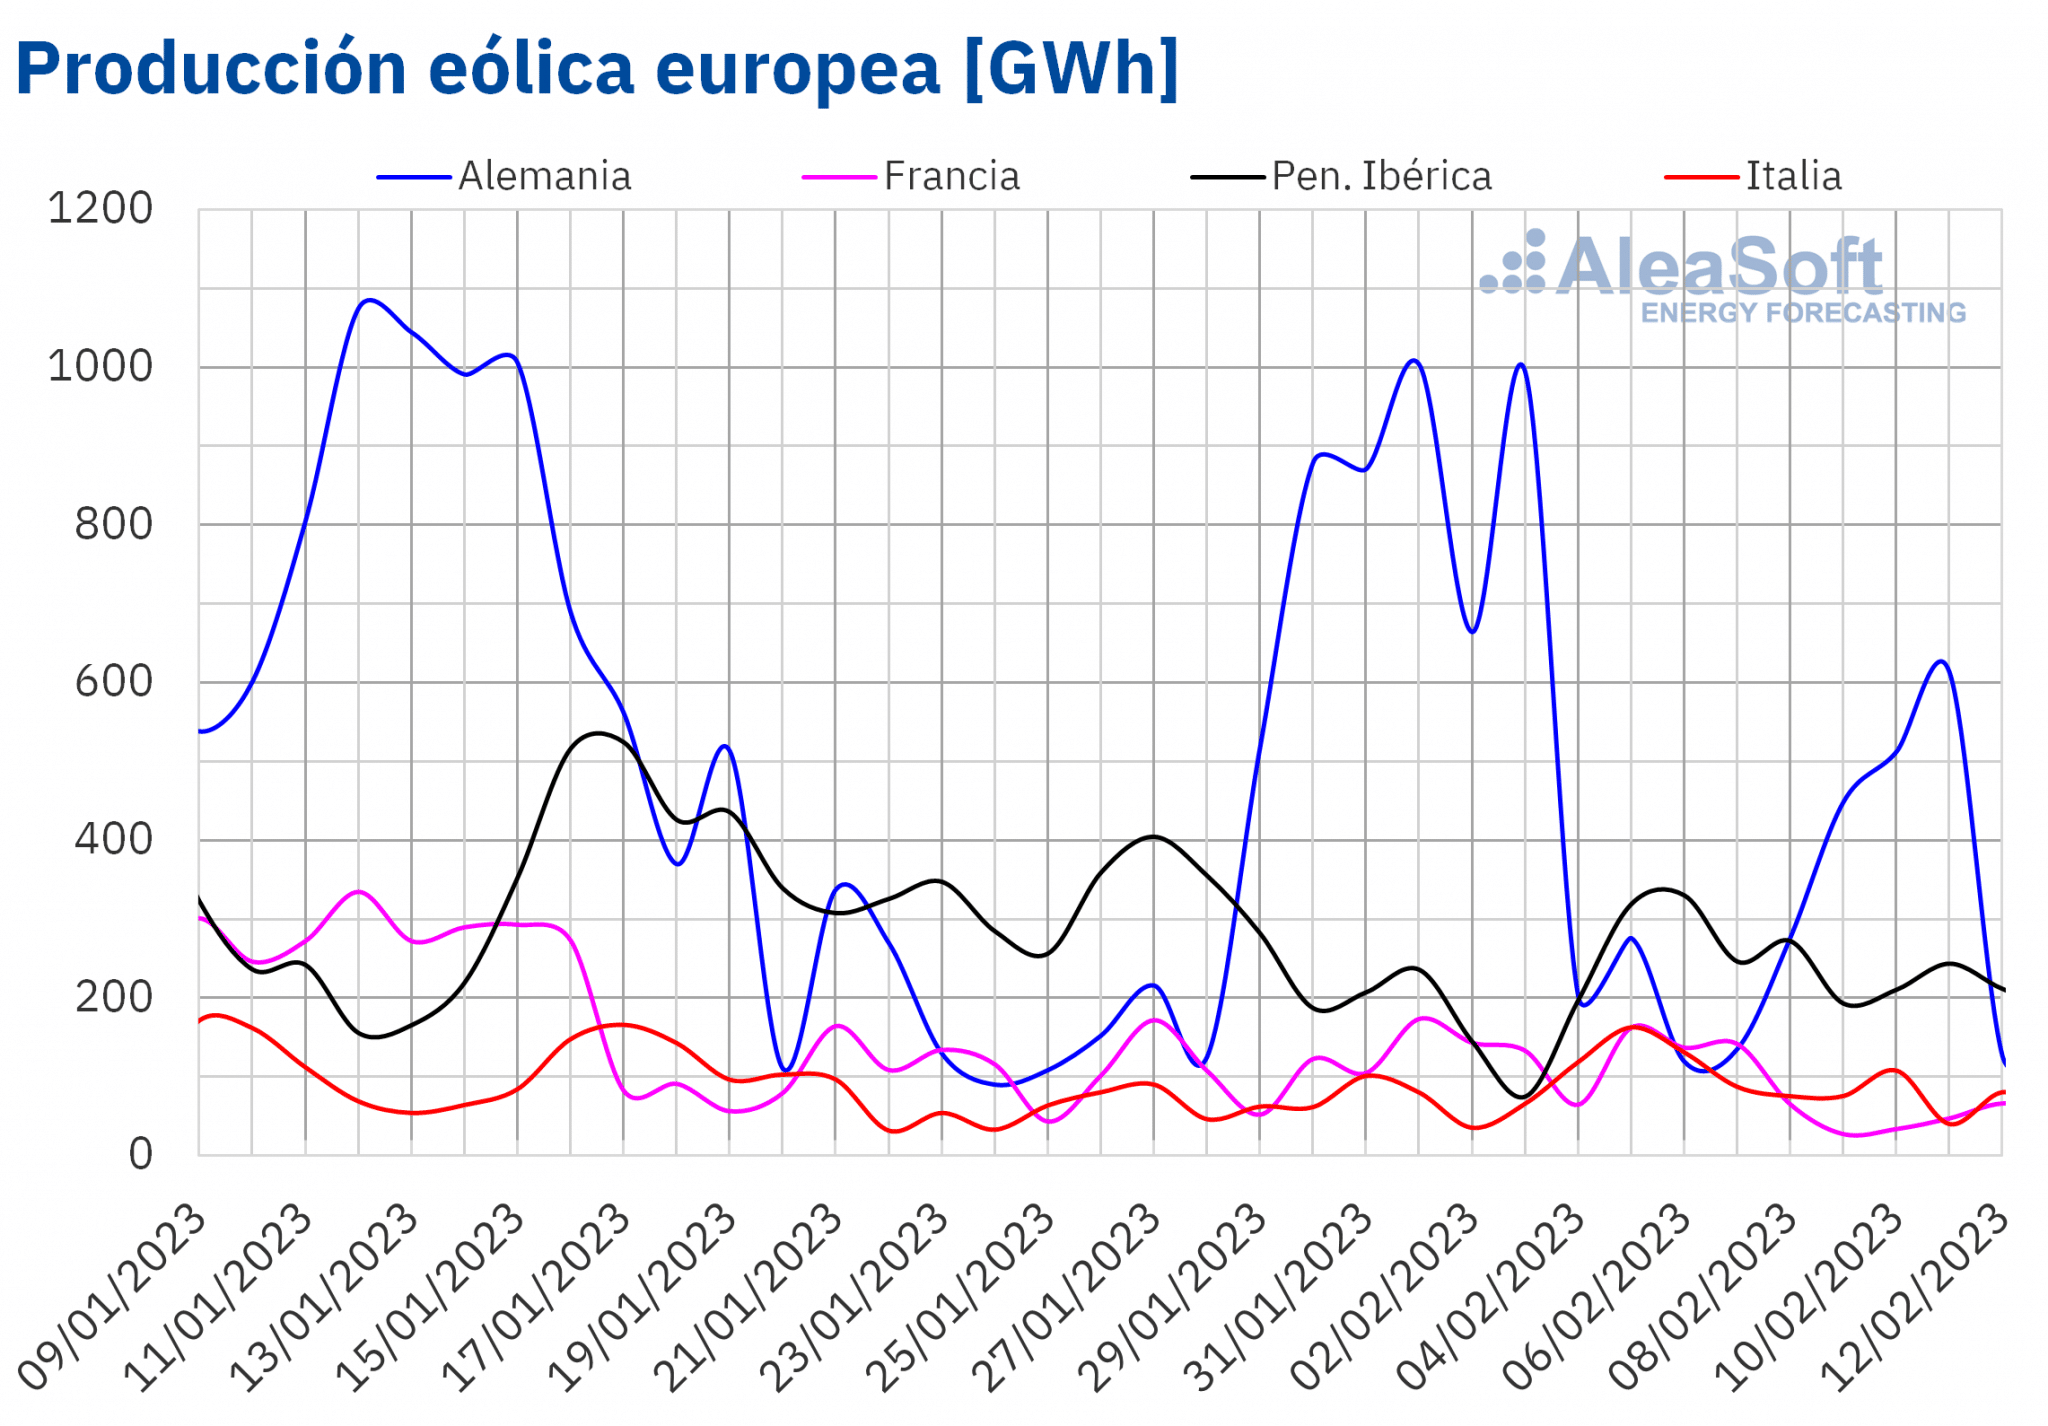 AleaSoft - Produccion eolica electricidad Europa